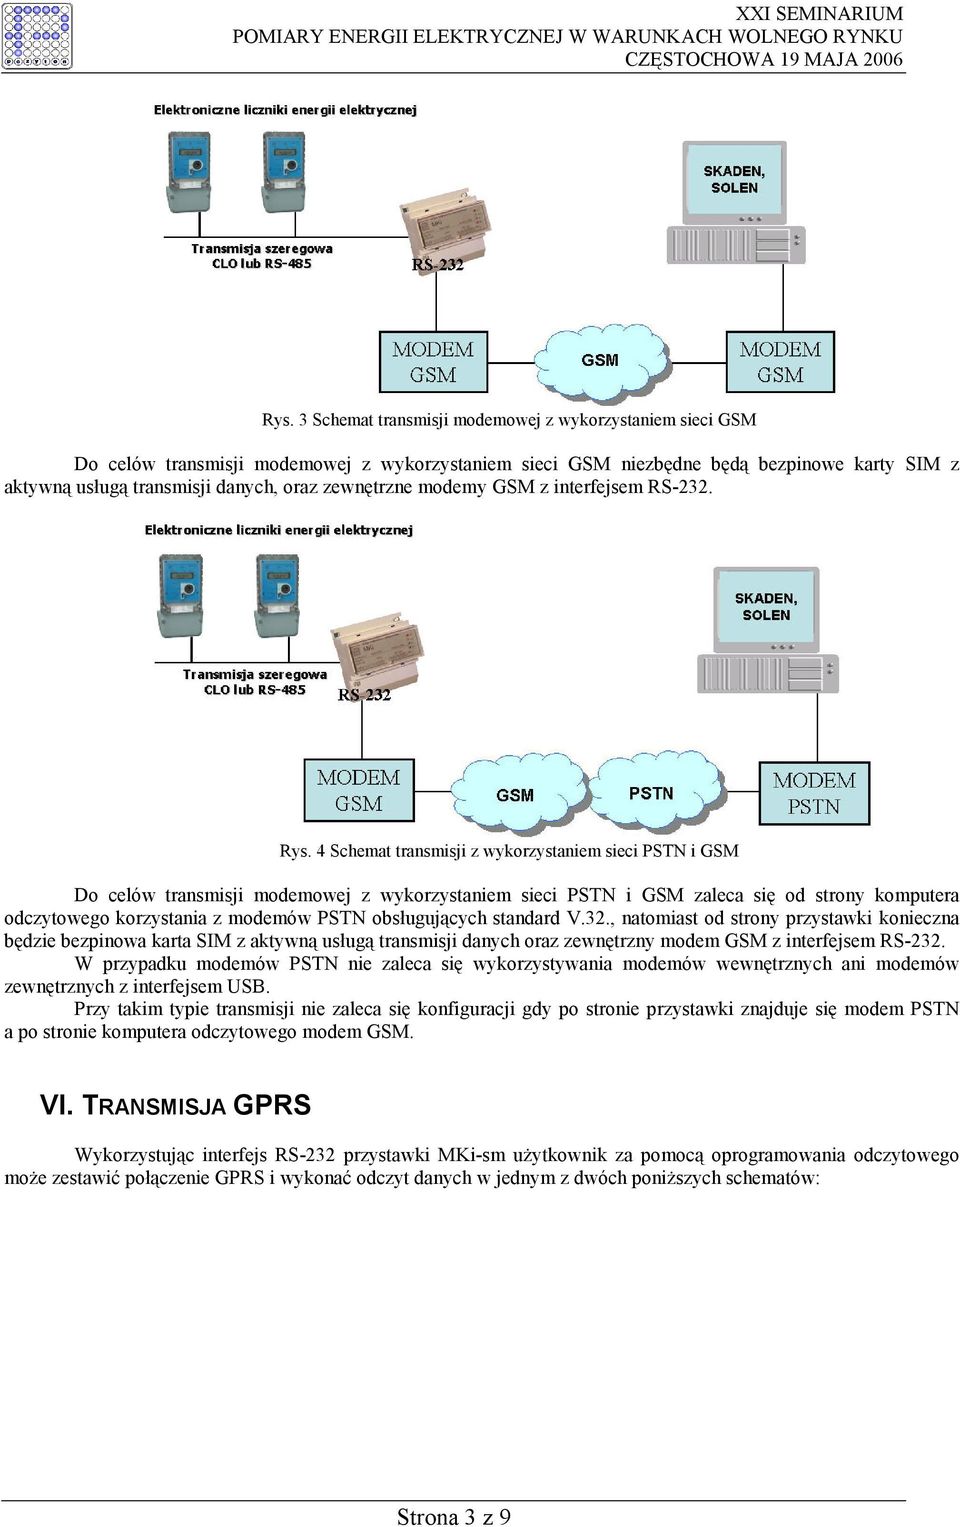 4 Schemat transmisji z wykorzystaniem sieci PSTN i GSM Do celów transmisji modemowej z wykorzystaniem sieci PSTN i GSM zaleca się od strony komputera odczytowego korzystania z modemów PSTN